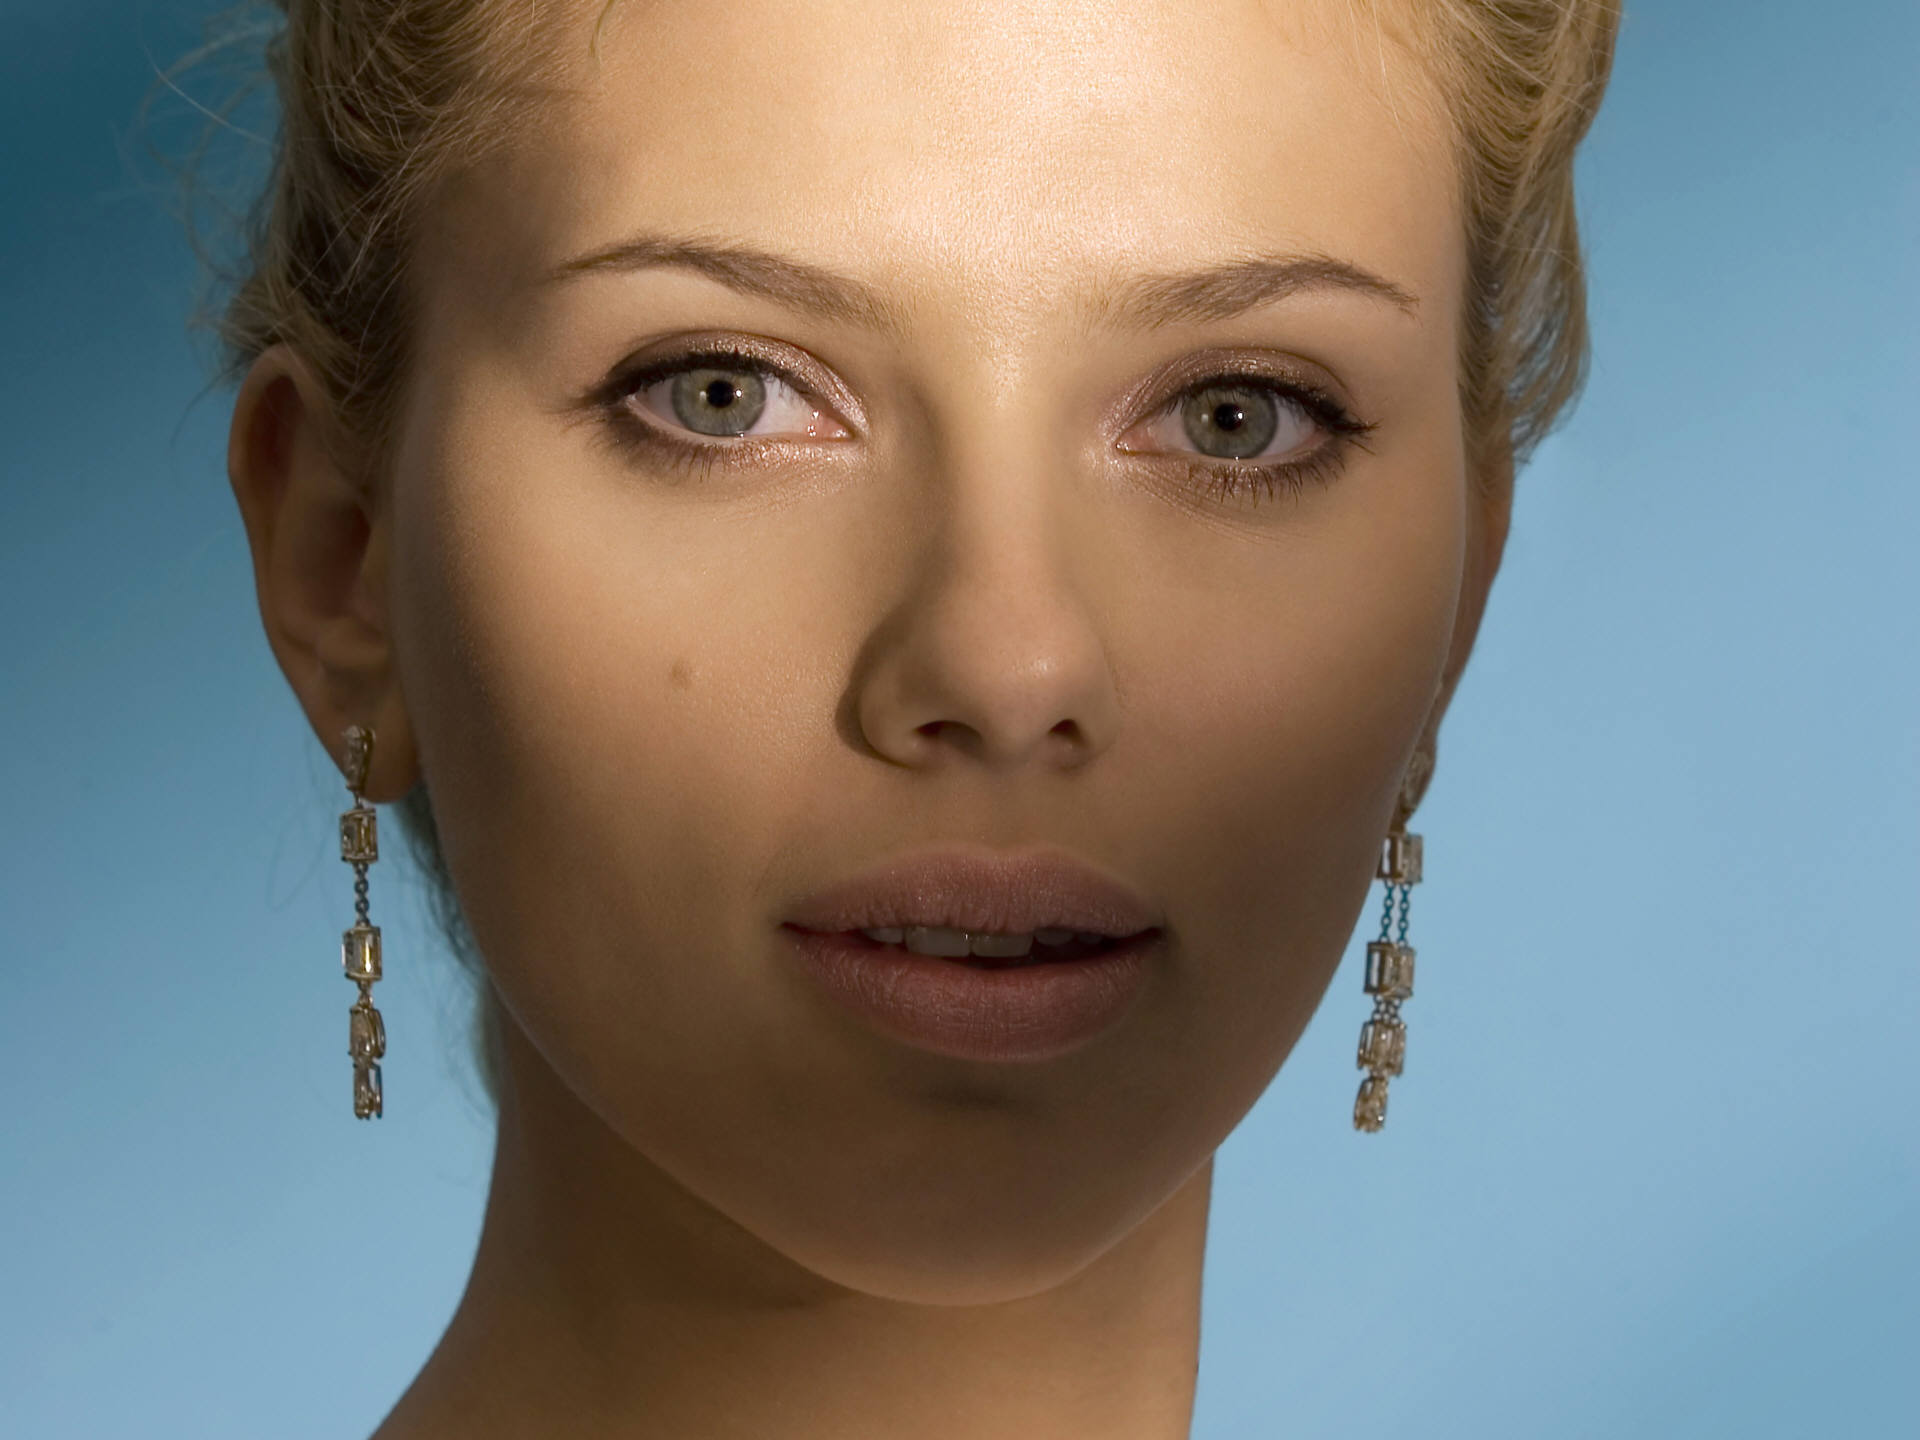 women, Scarlett Johansson, actress, earrings - desktop wallpaper